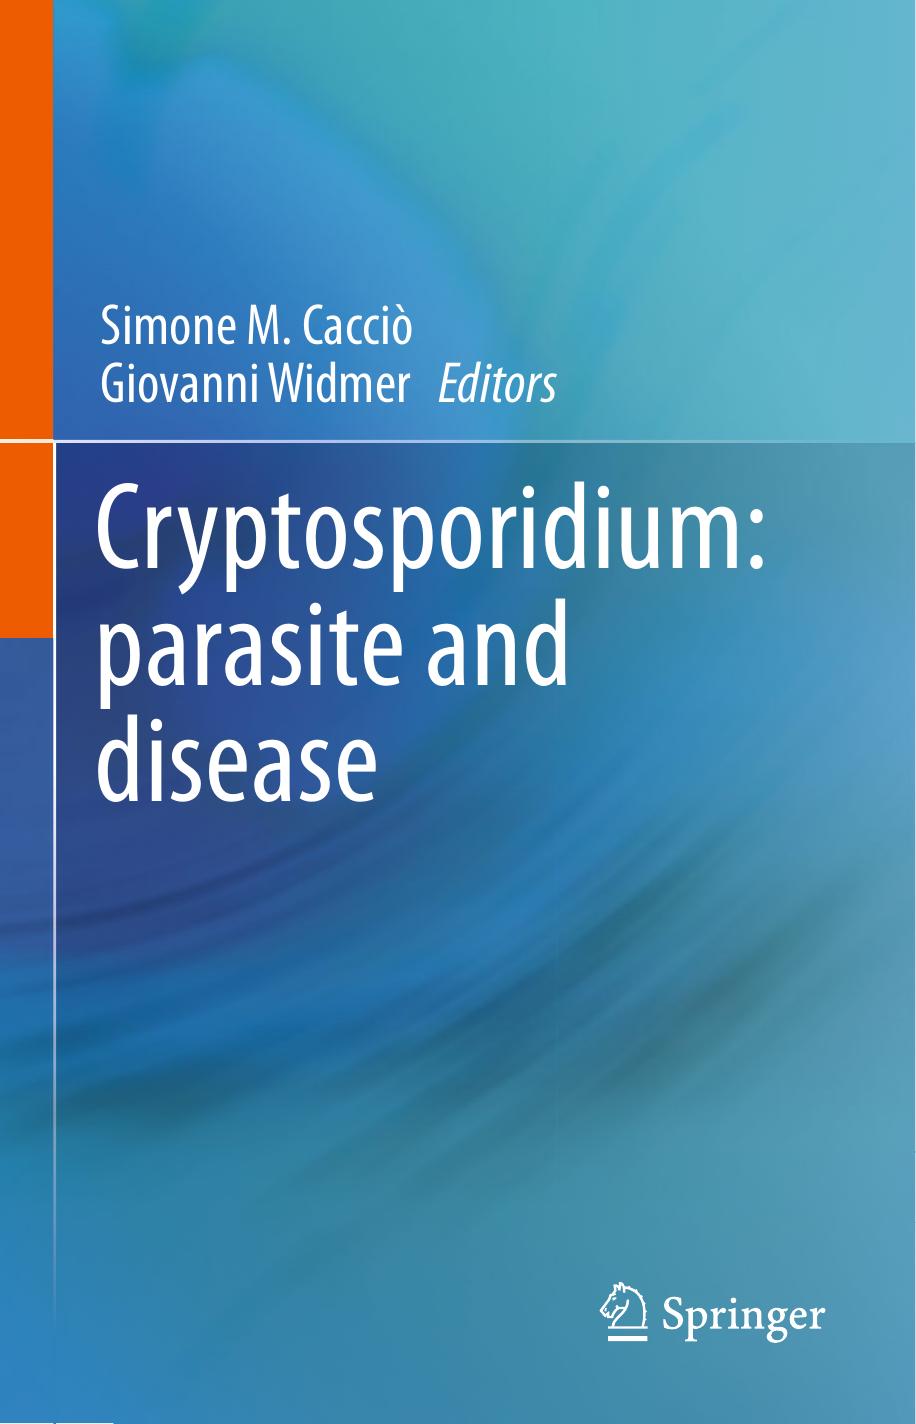 Cryptosporidium, Parasite and Disease